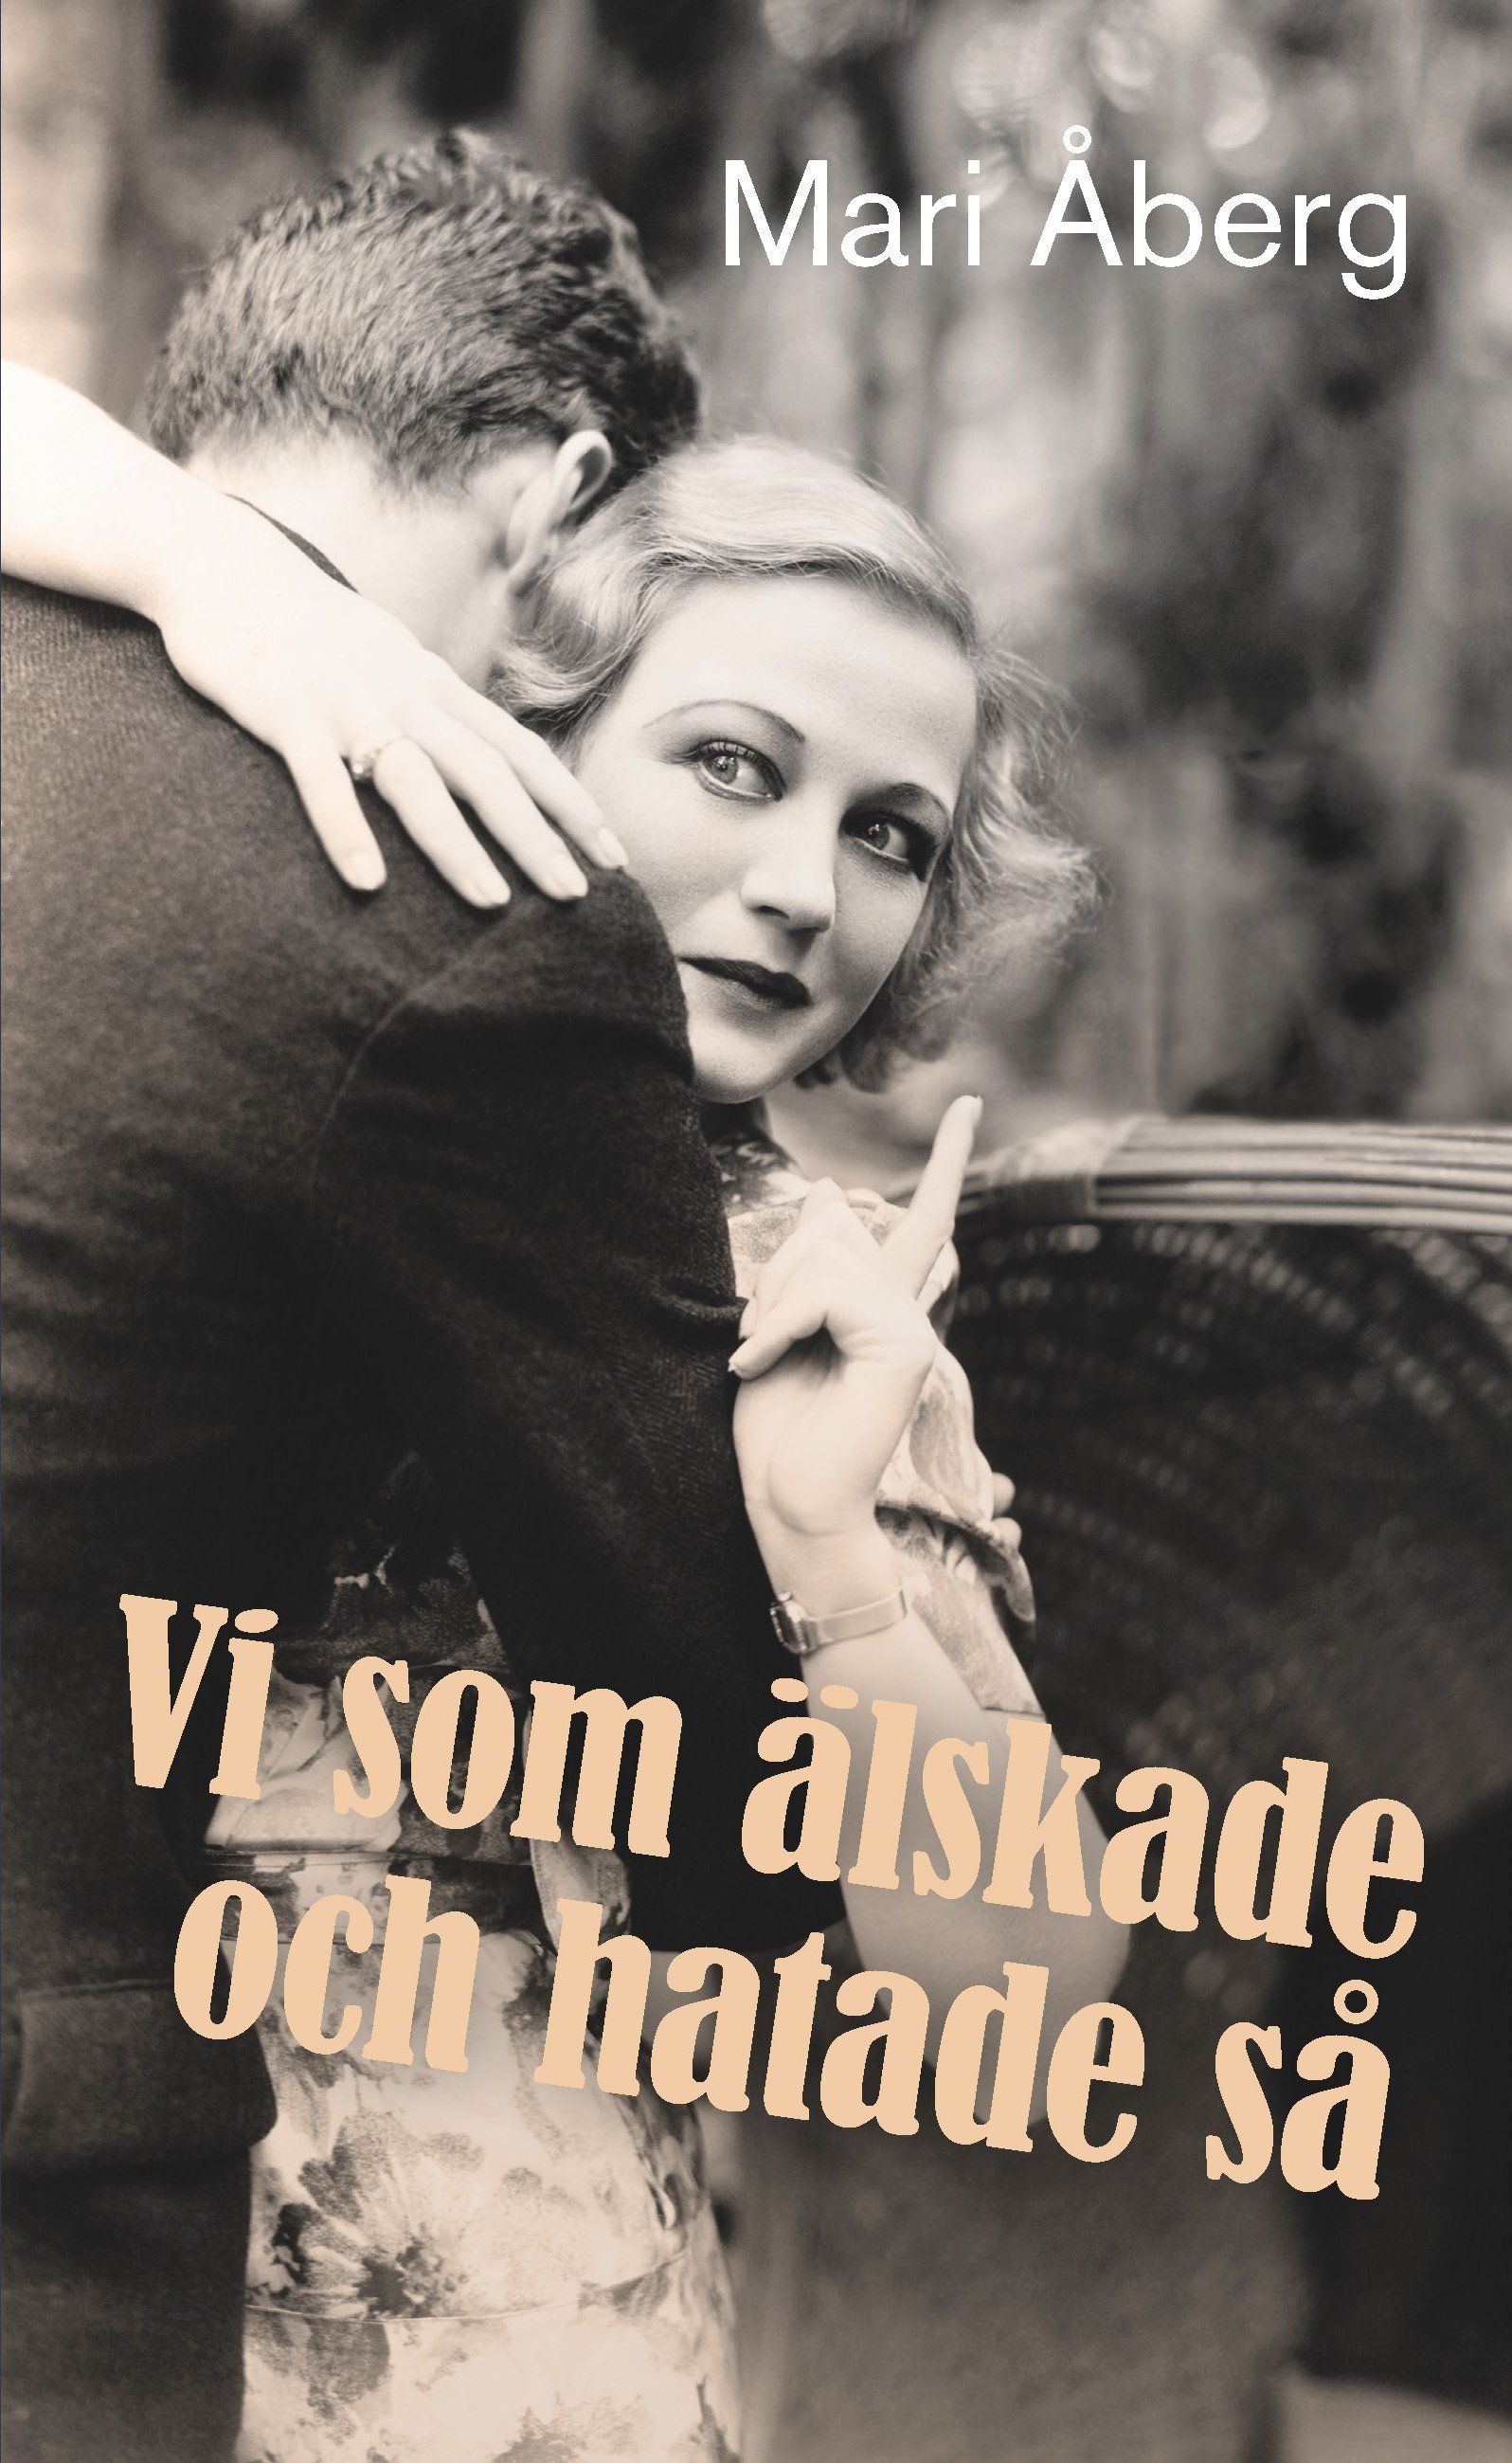 Vi som älskade och hatade så, e-bok av Mari Åberg